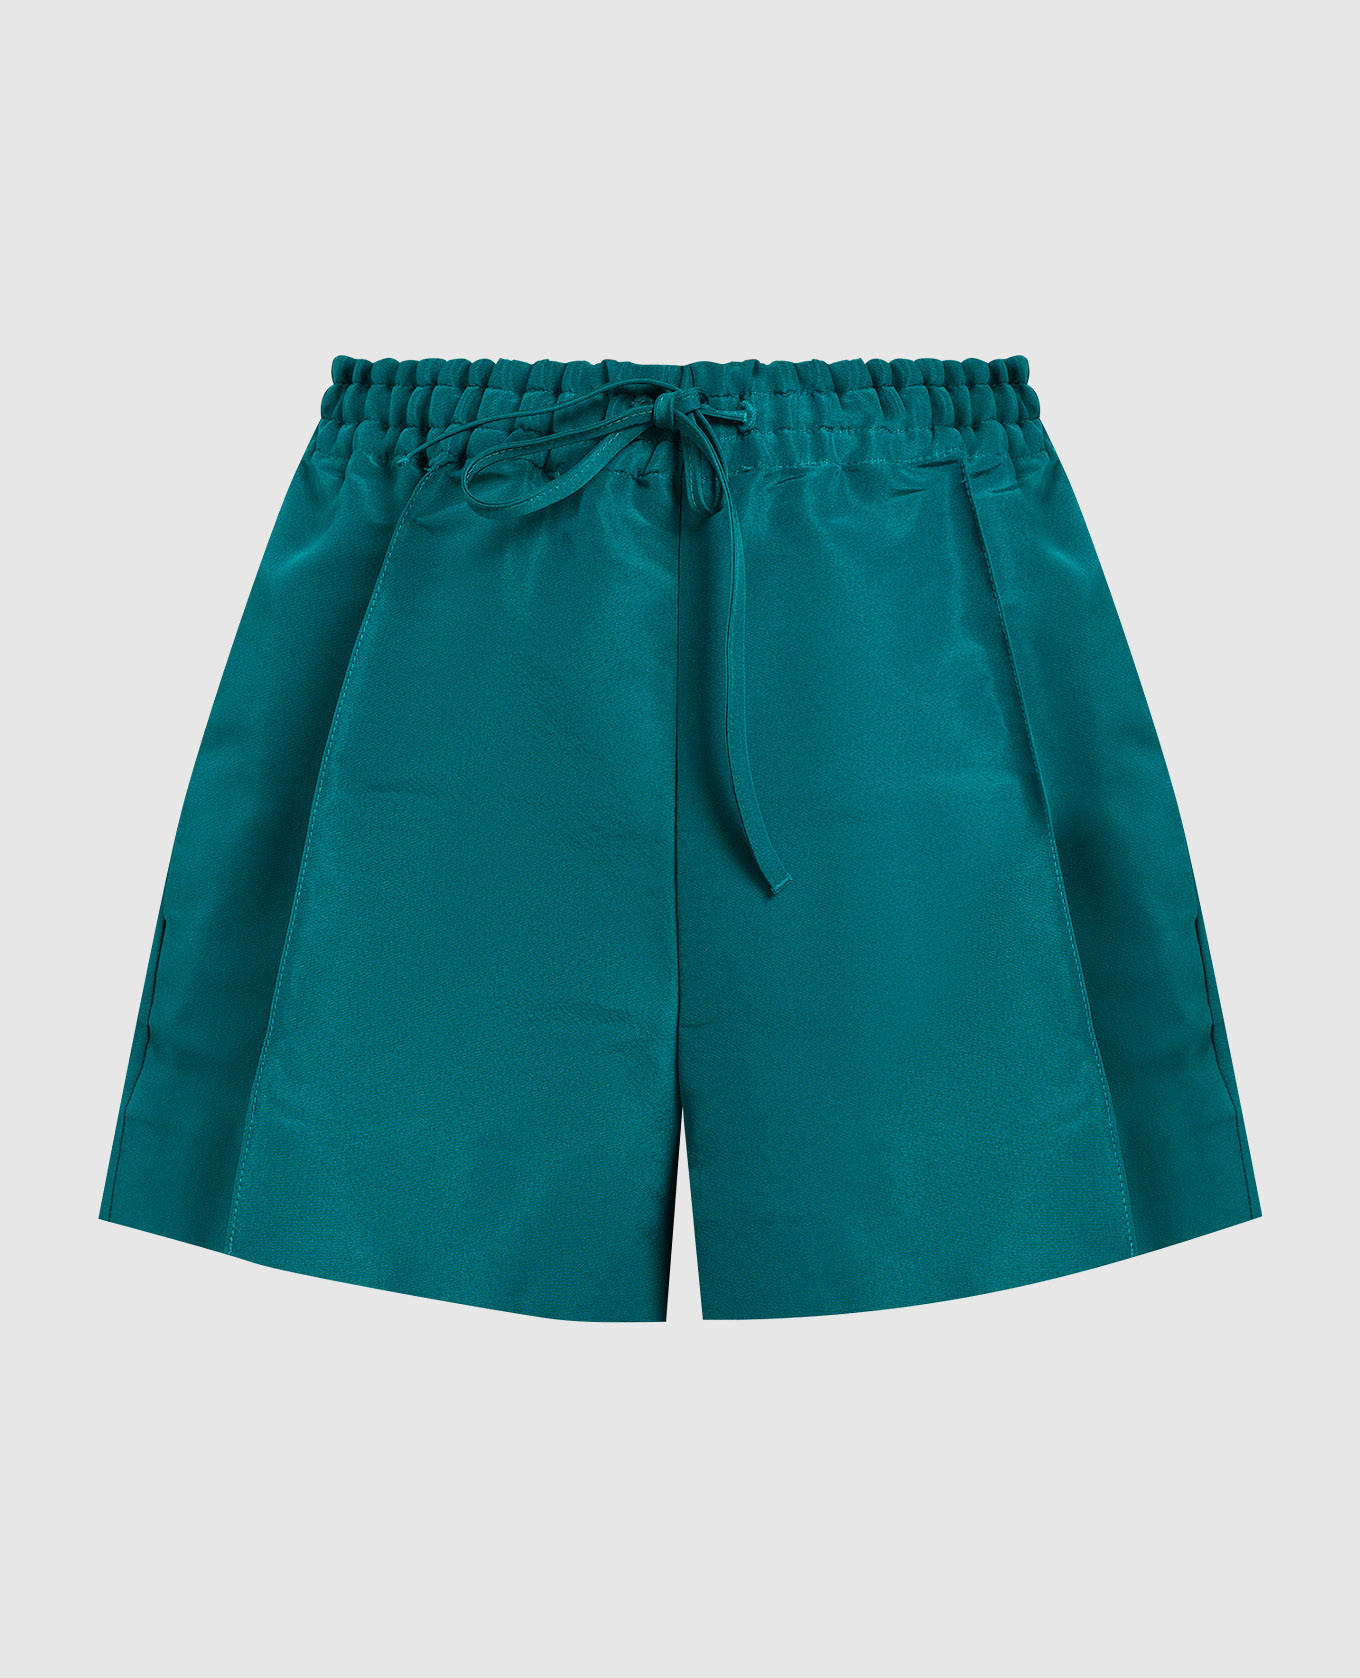 Green silk shorts